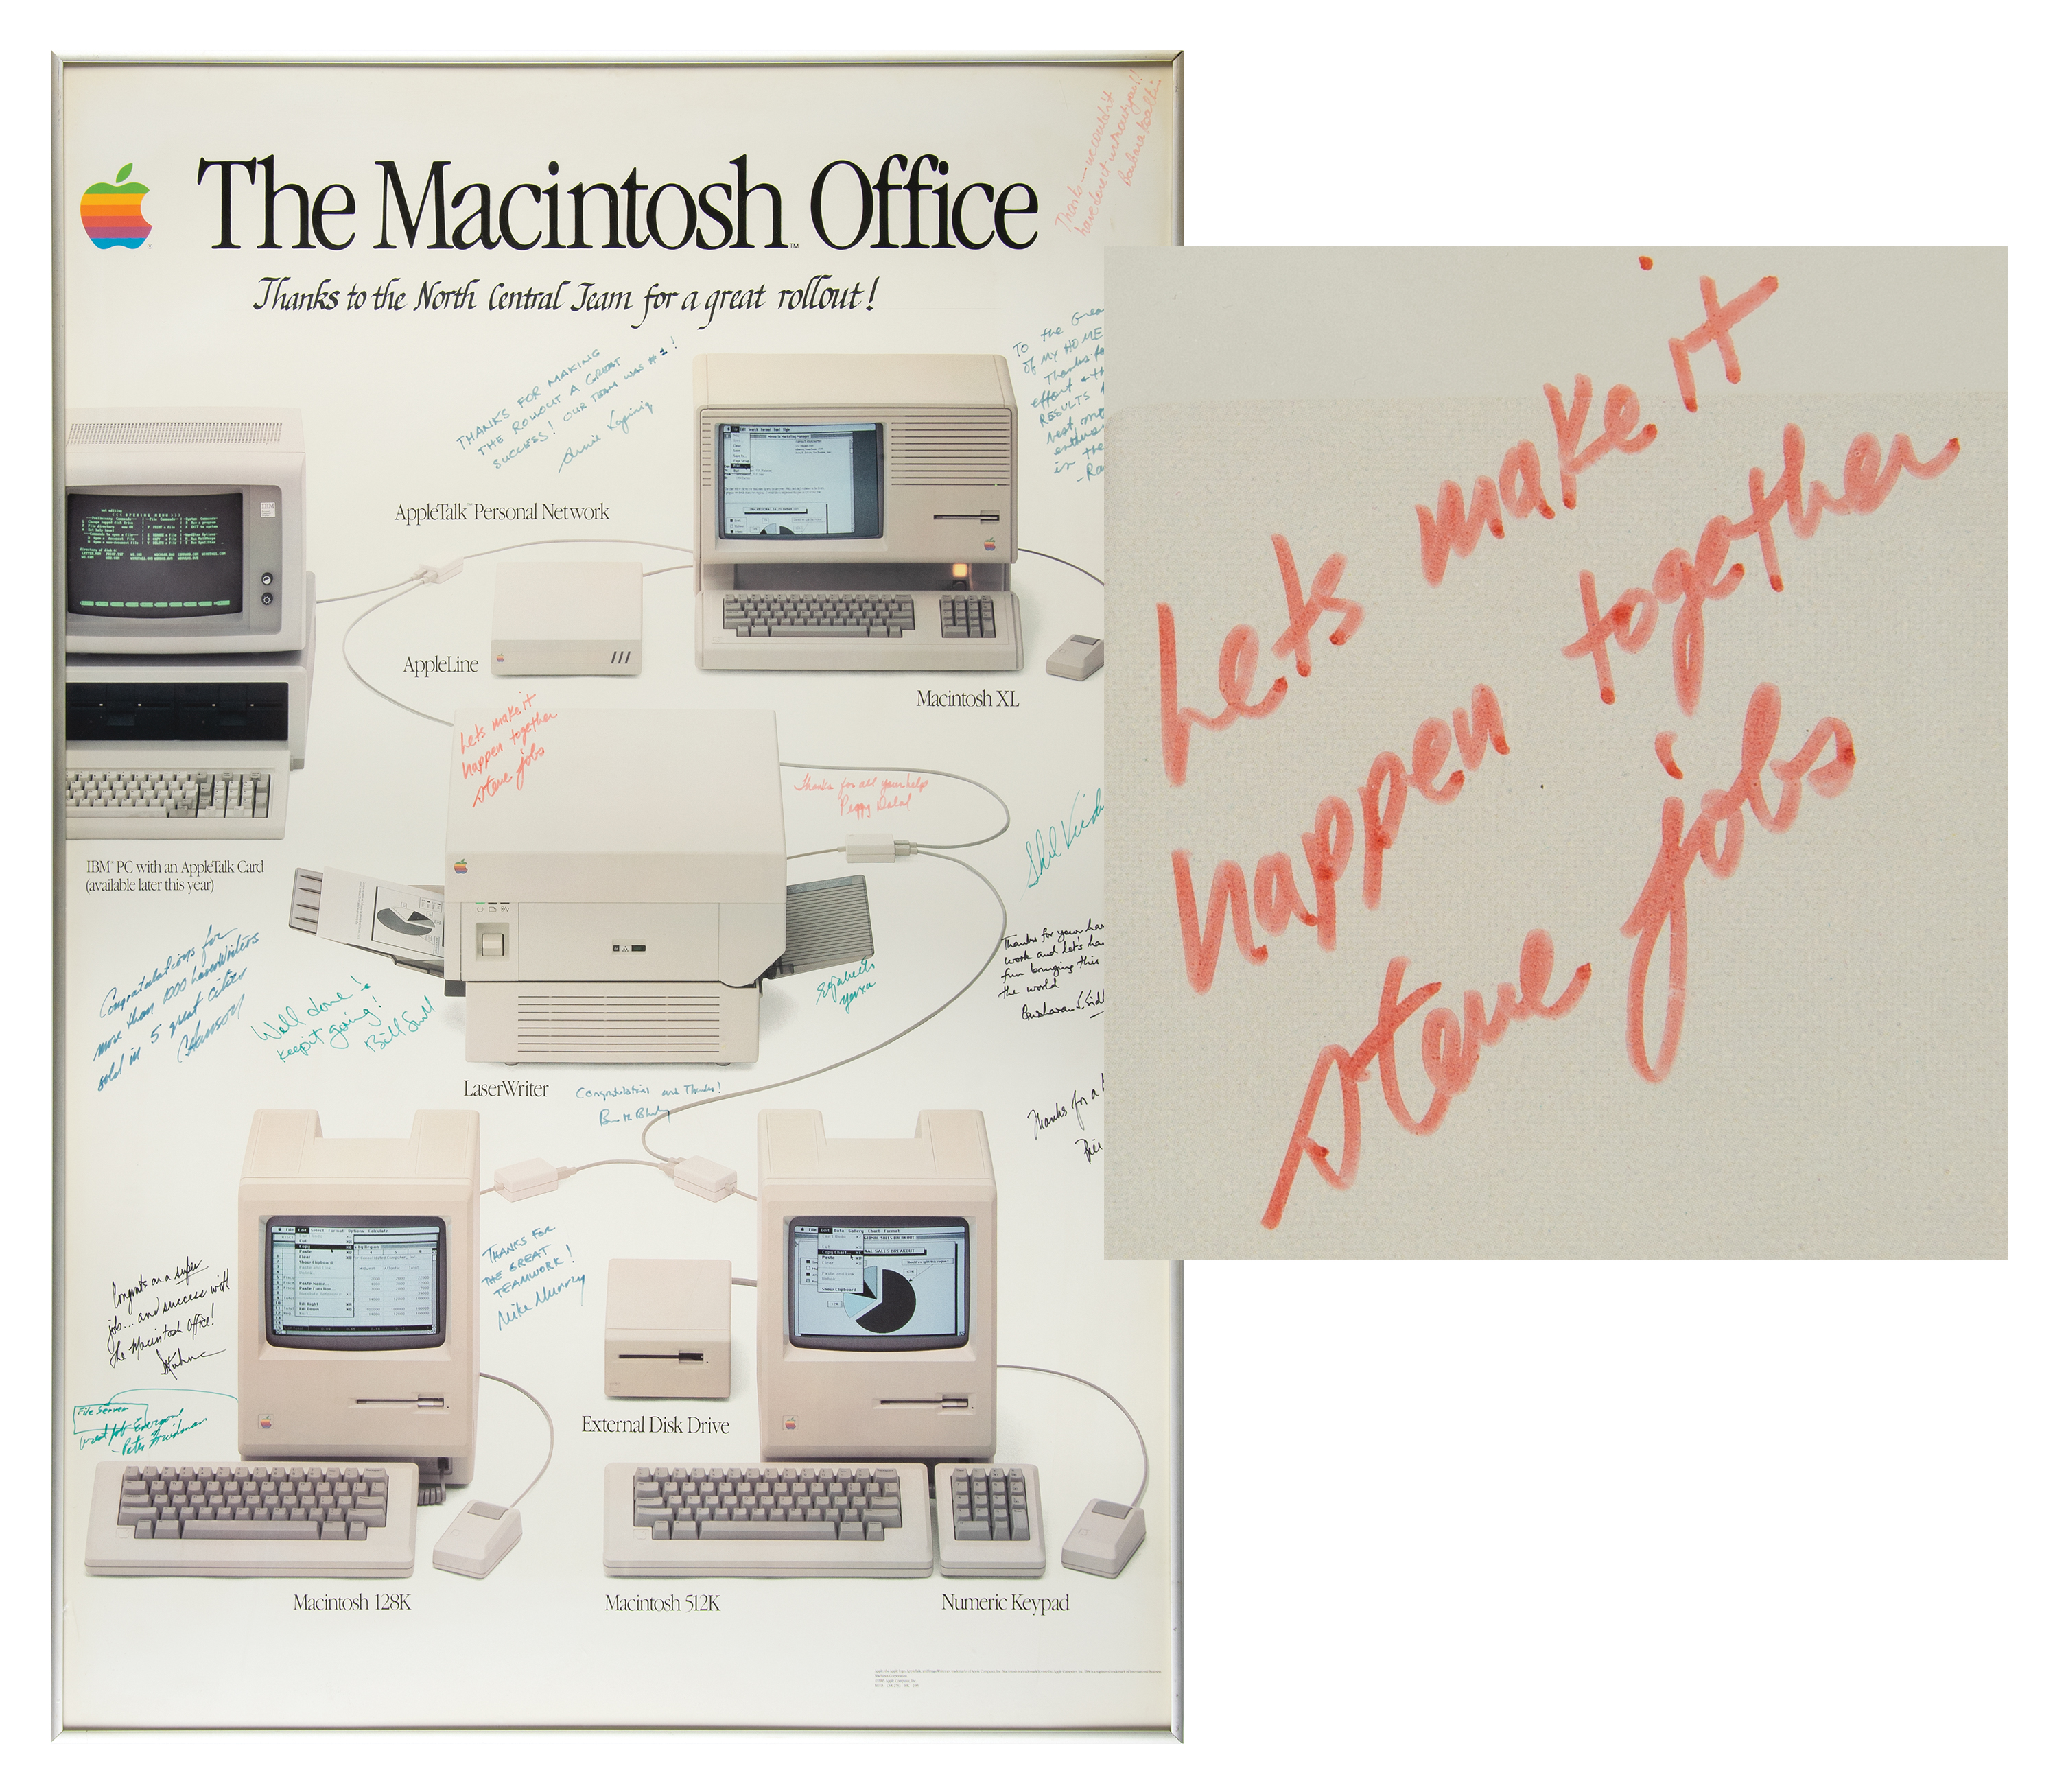 Lot #5006 Steve Jobs Signed 'Macintosh Office' Poster - “Let’s make it happen together, steve jobs"